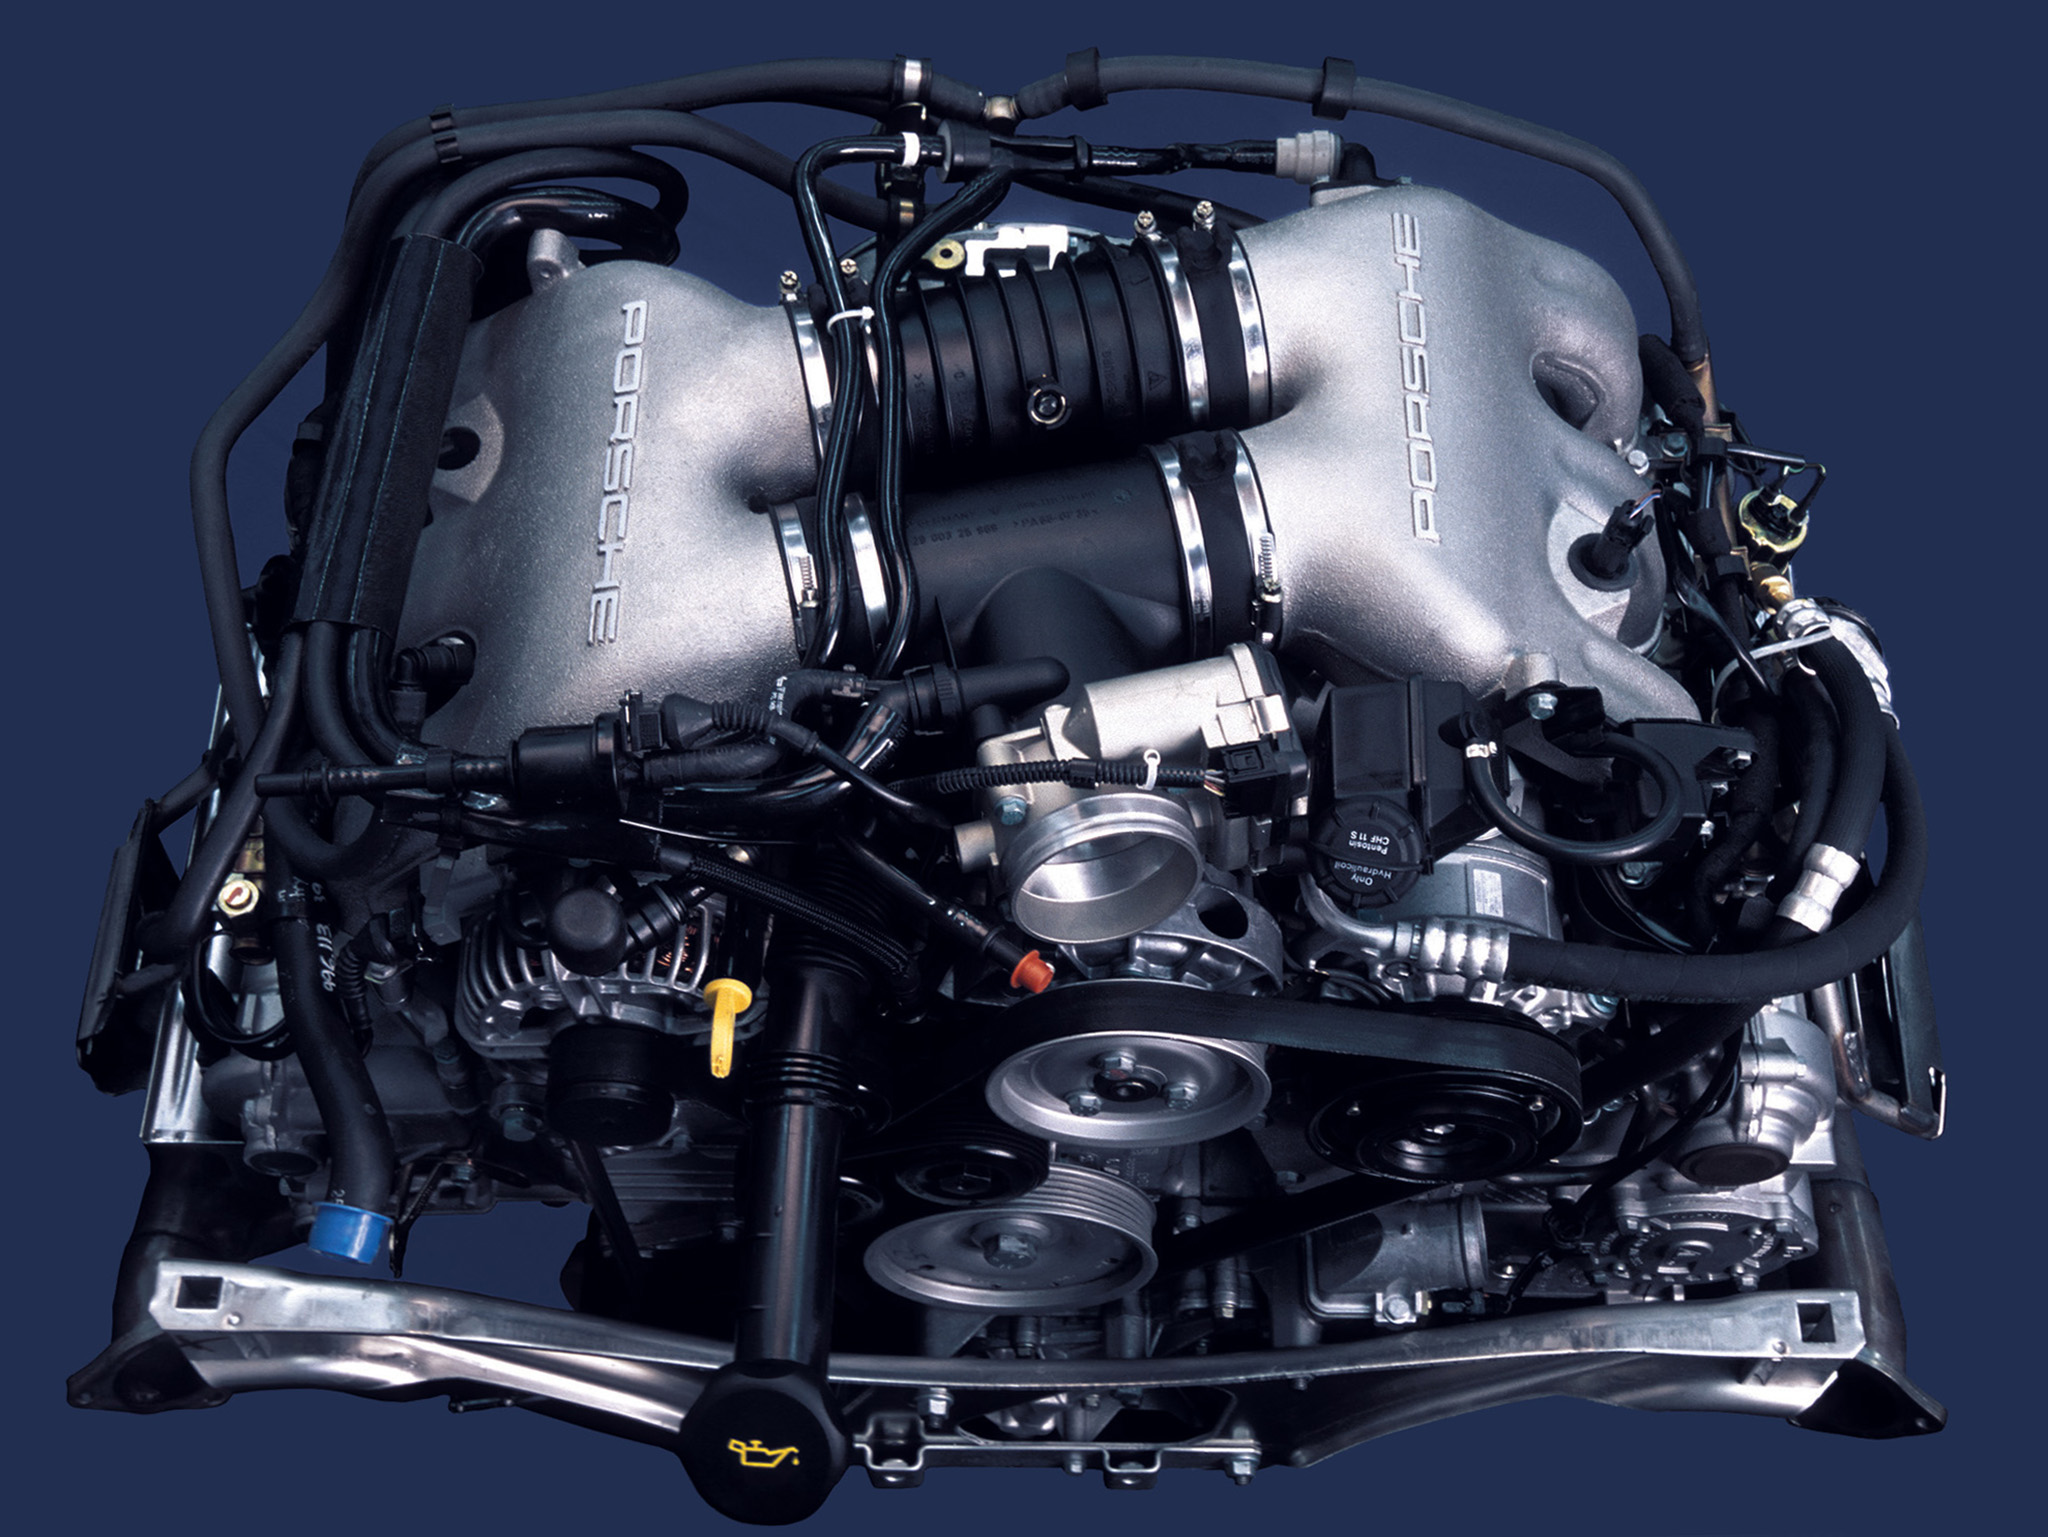 Porsche 911 996 engine